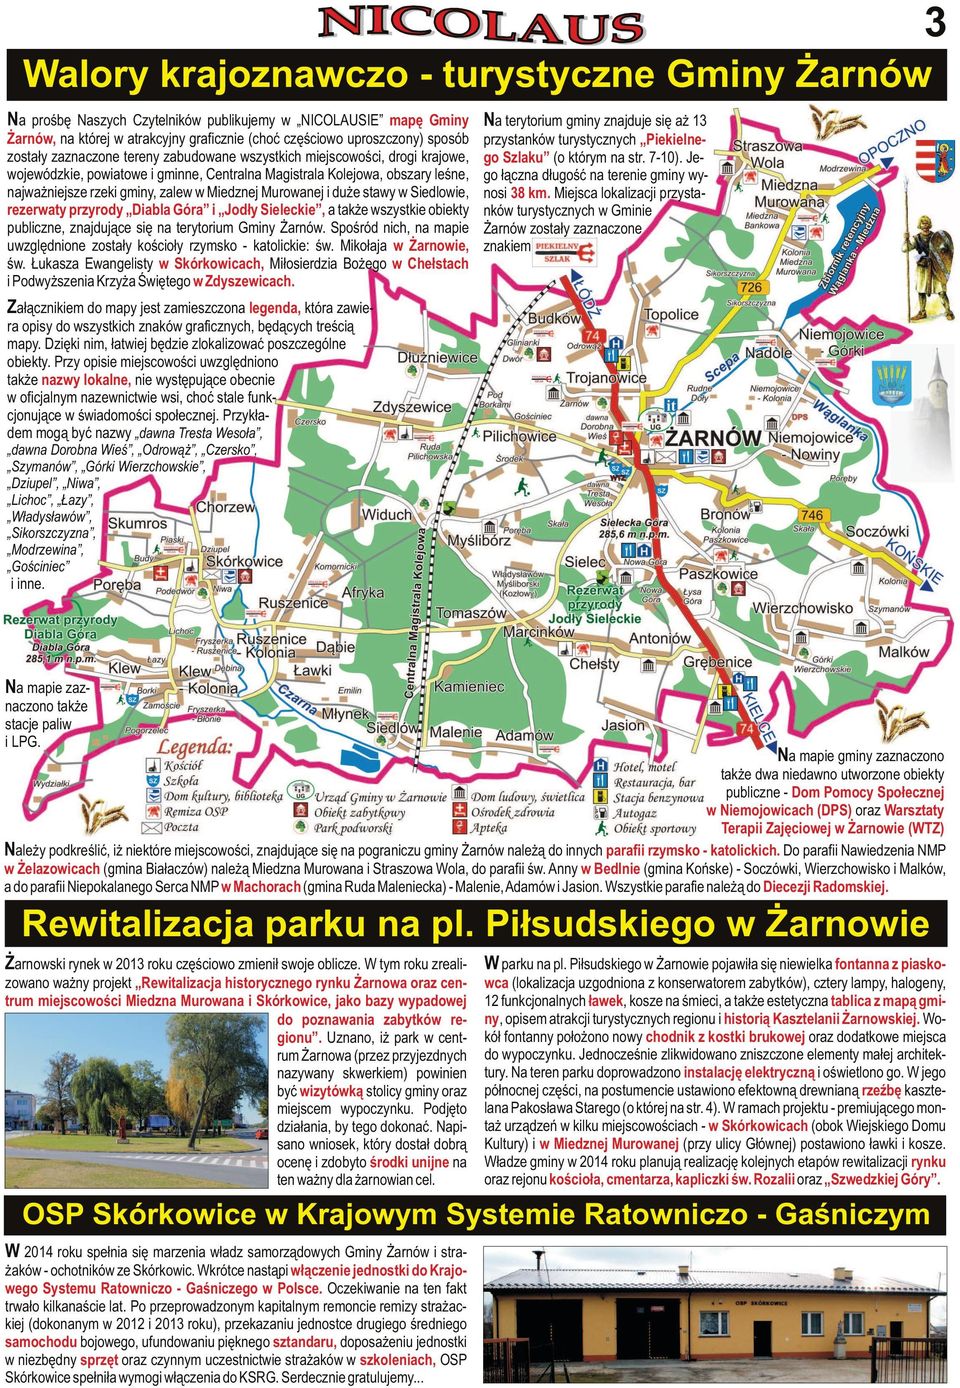 Murowanej i duże stawy w Siedlowie, rezerwaty przyrody Diabla Góra i Jodły Sieleckie, a także wszystkie obiekty publiczne, znajdujące się na terytorium Gminy Żarnów.